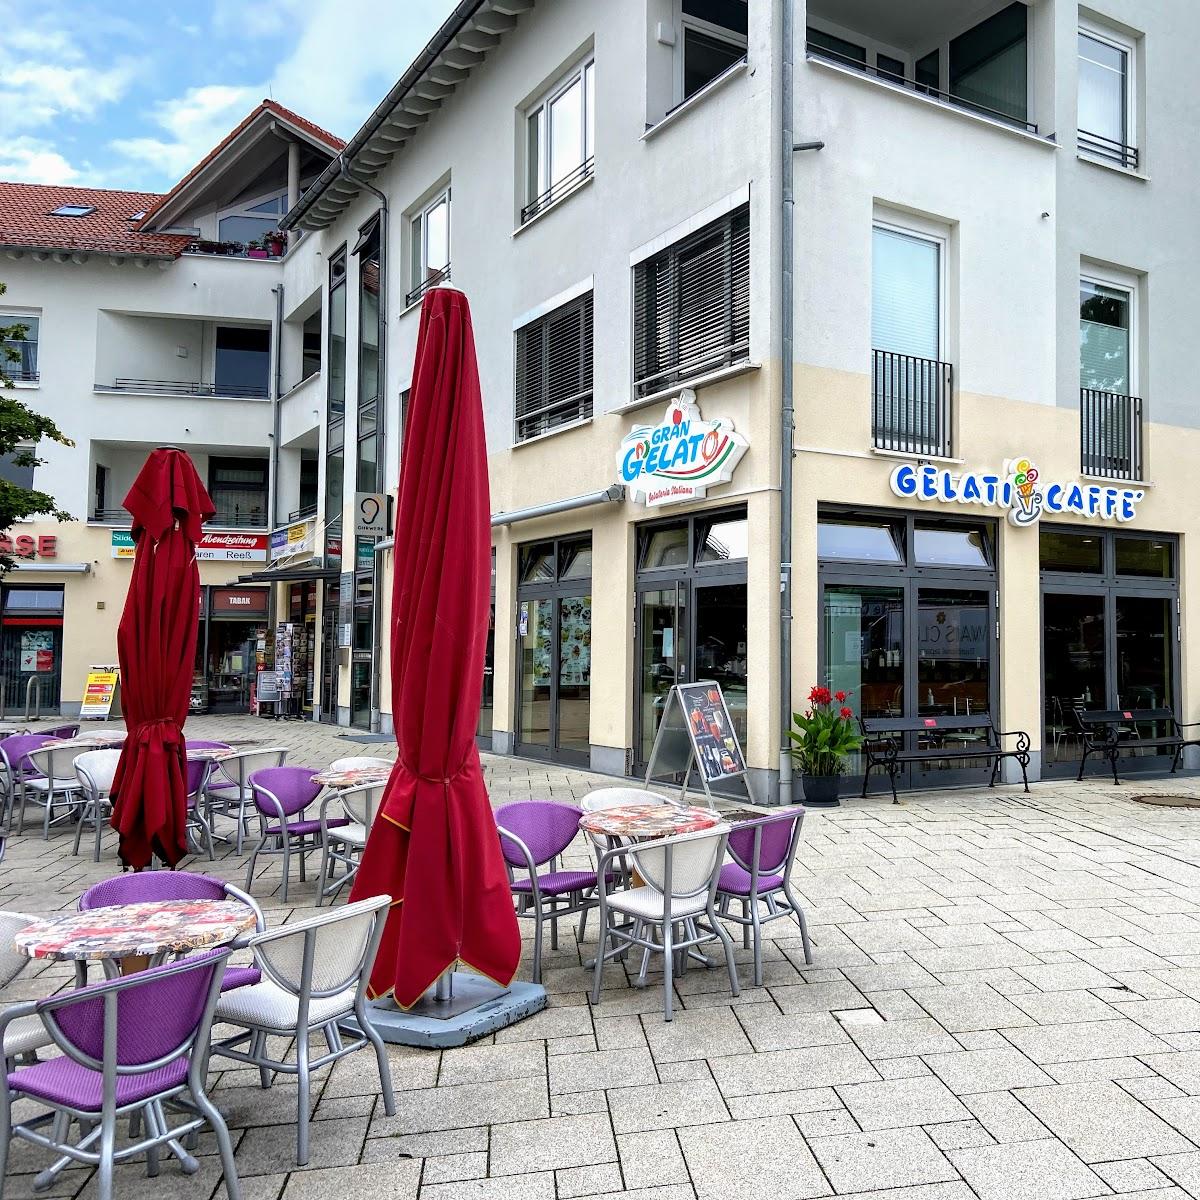 Restaurant "Gran Gelato" in Sauerlach